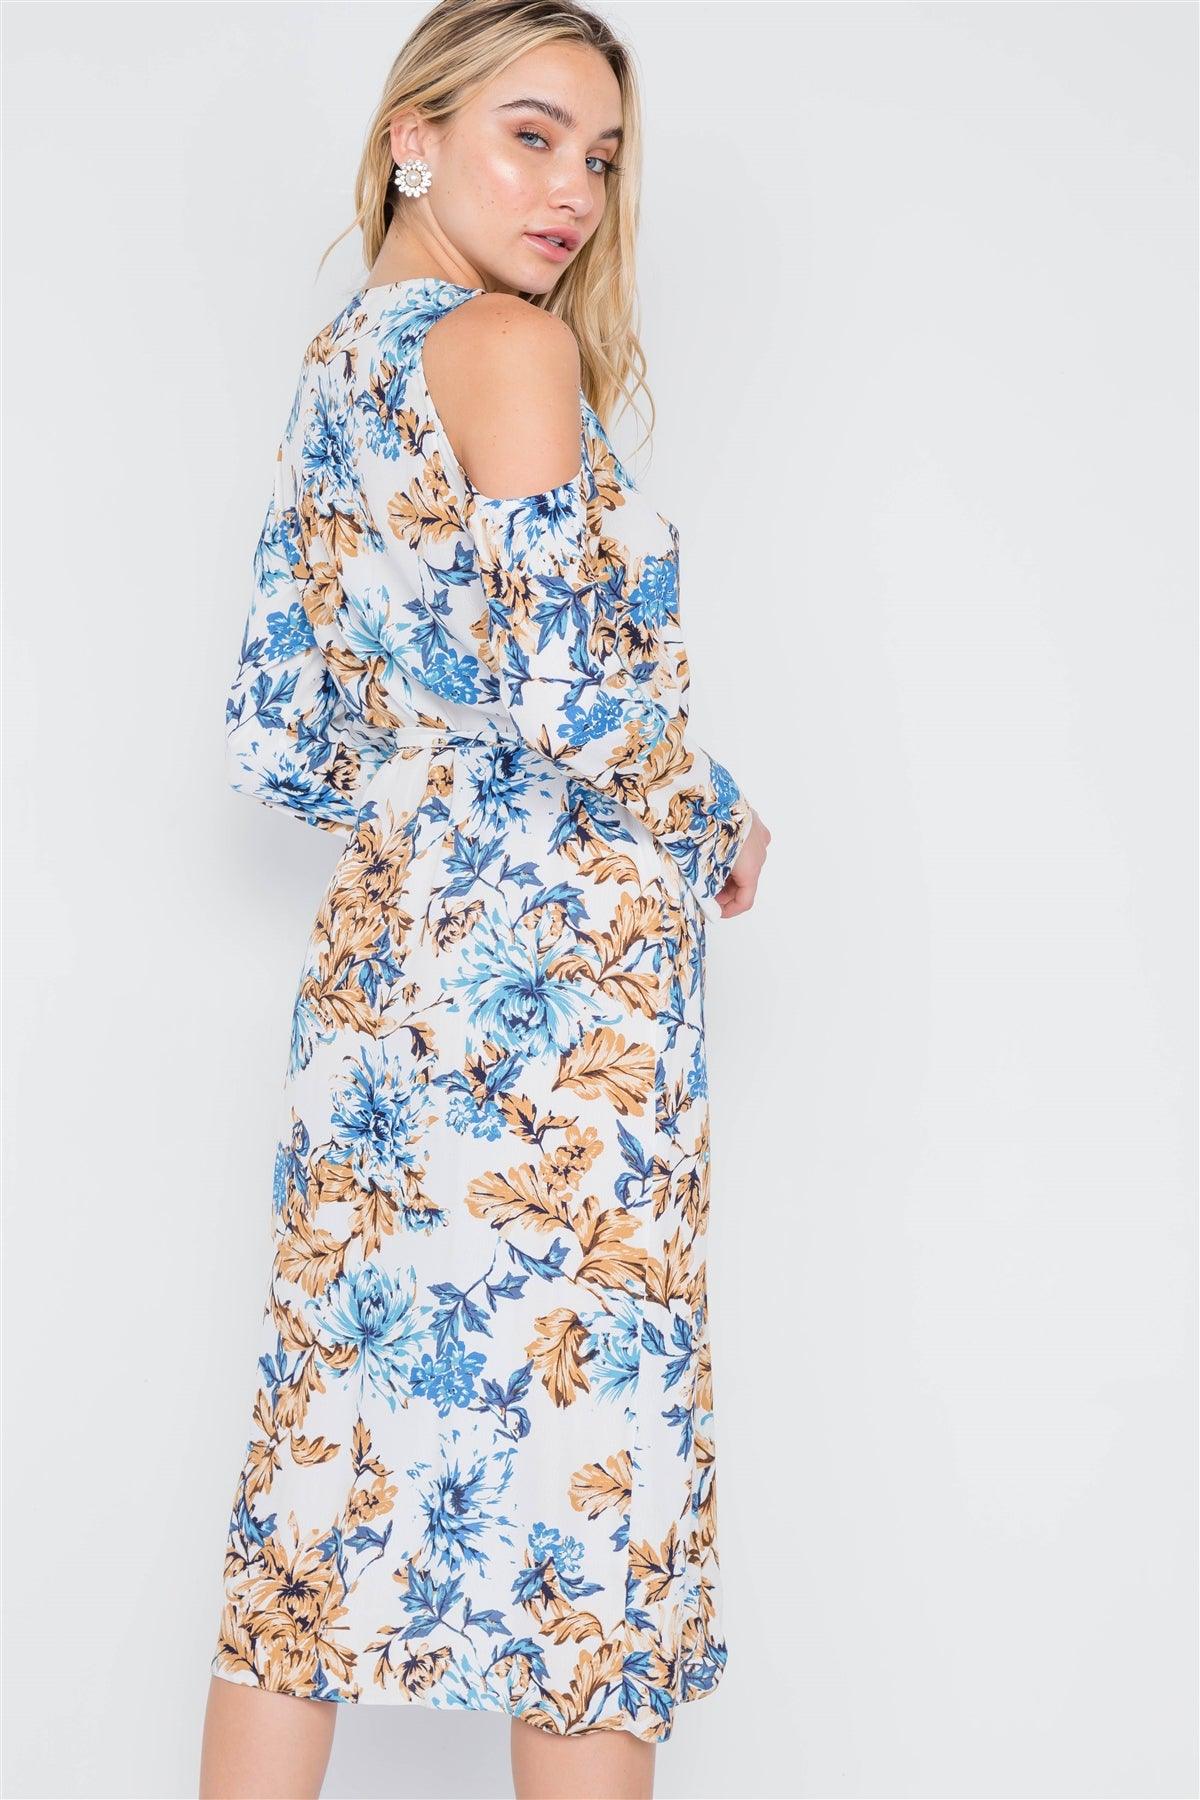 Off White Blue Floral Print Cold Shoulder Midi Dress /2-2-2